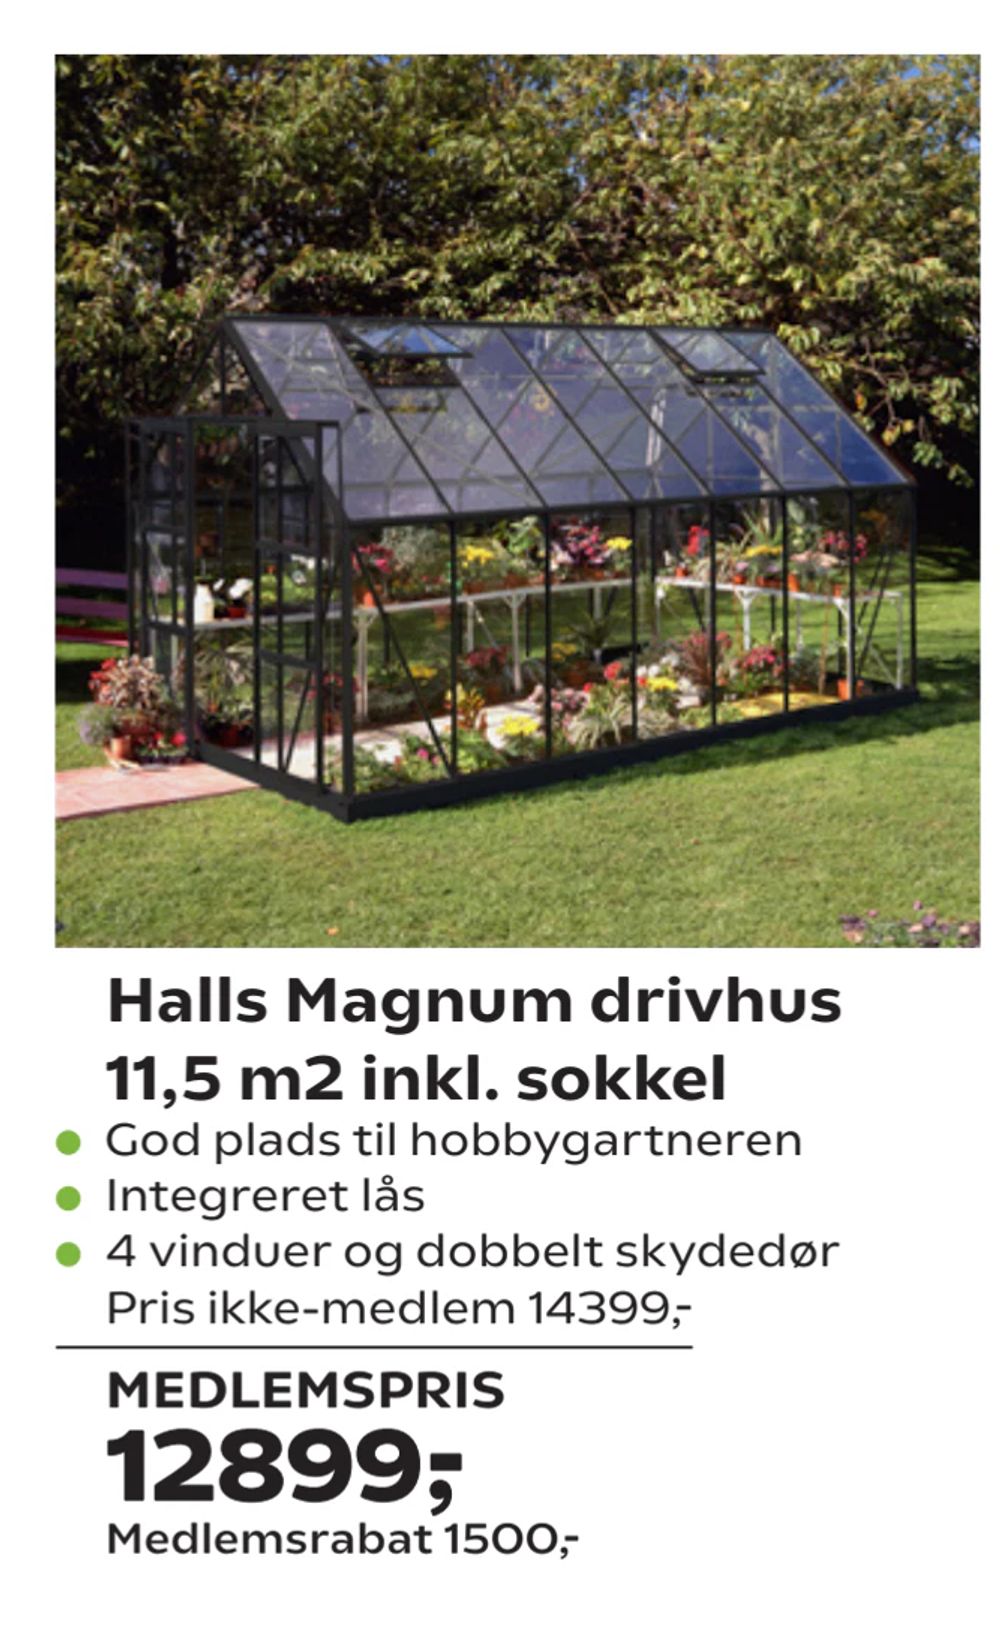 Tilbud på Halls Magnum drivhus 11,5 m2 inkl. sokkel fra Coop.dk til 14.399 kr.